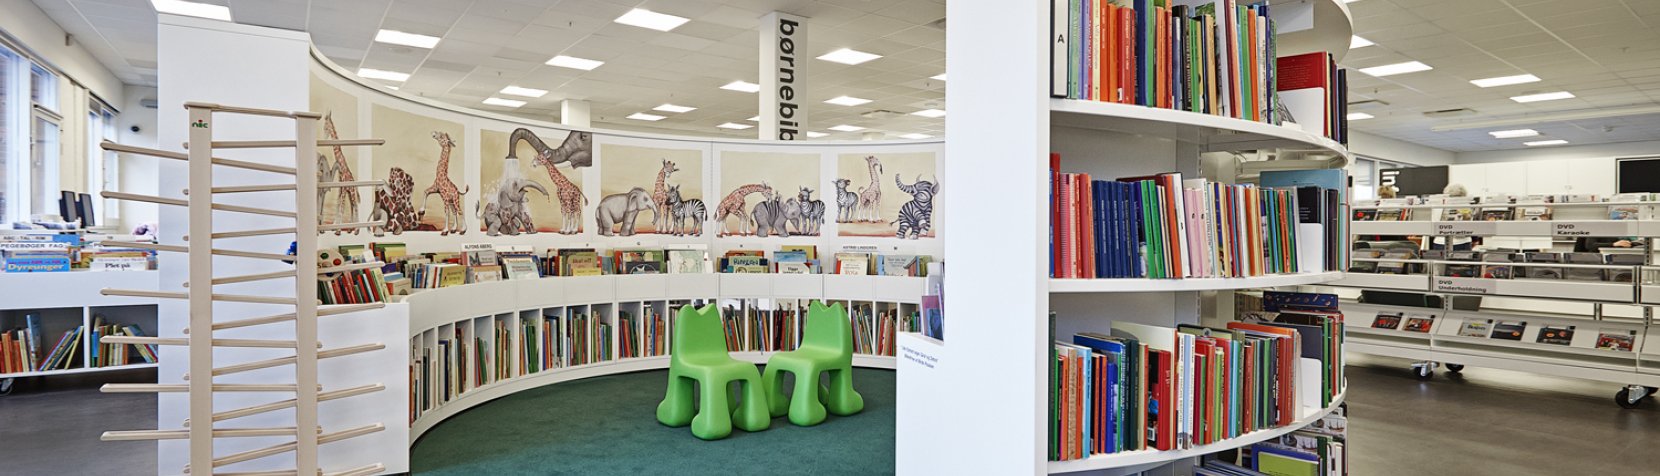 Holte bibliotek for børn